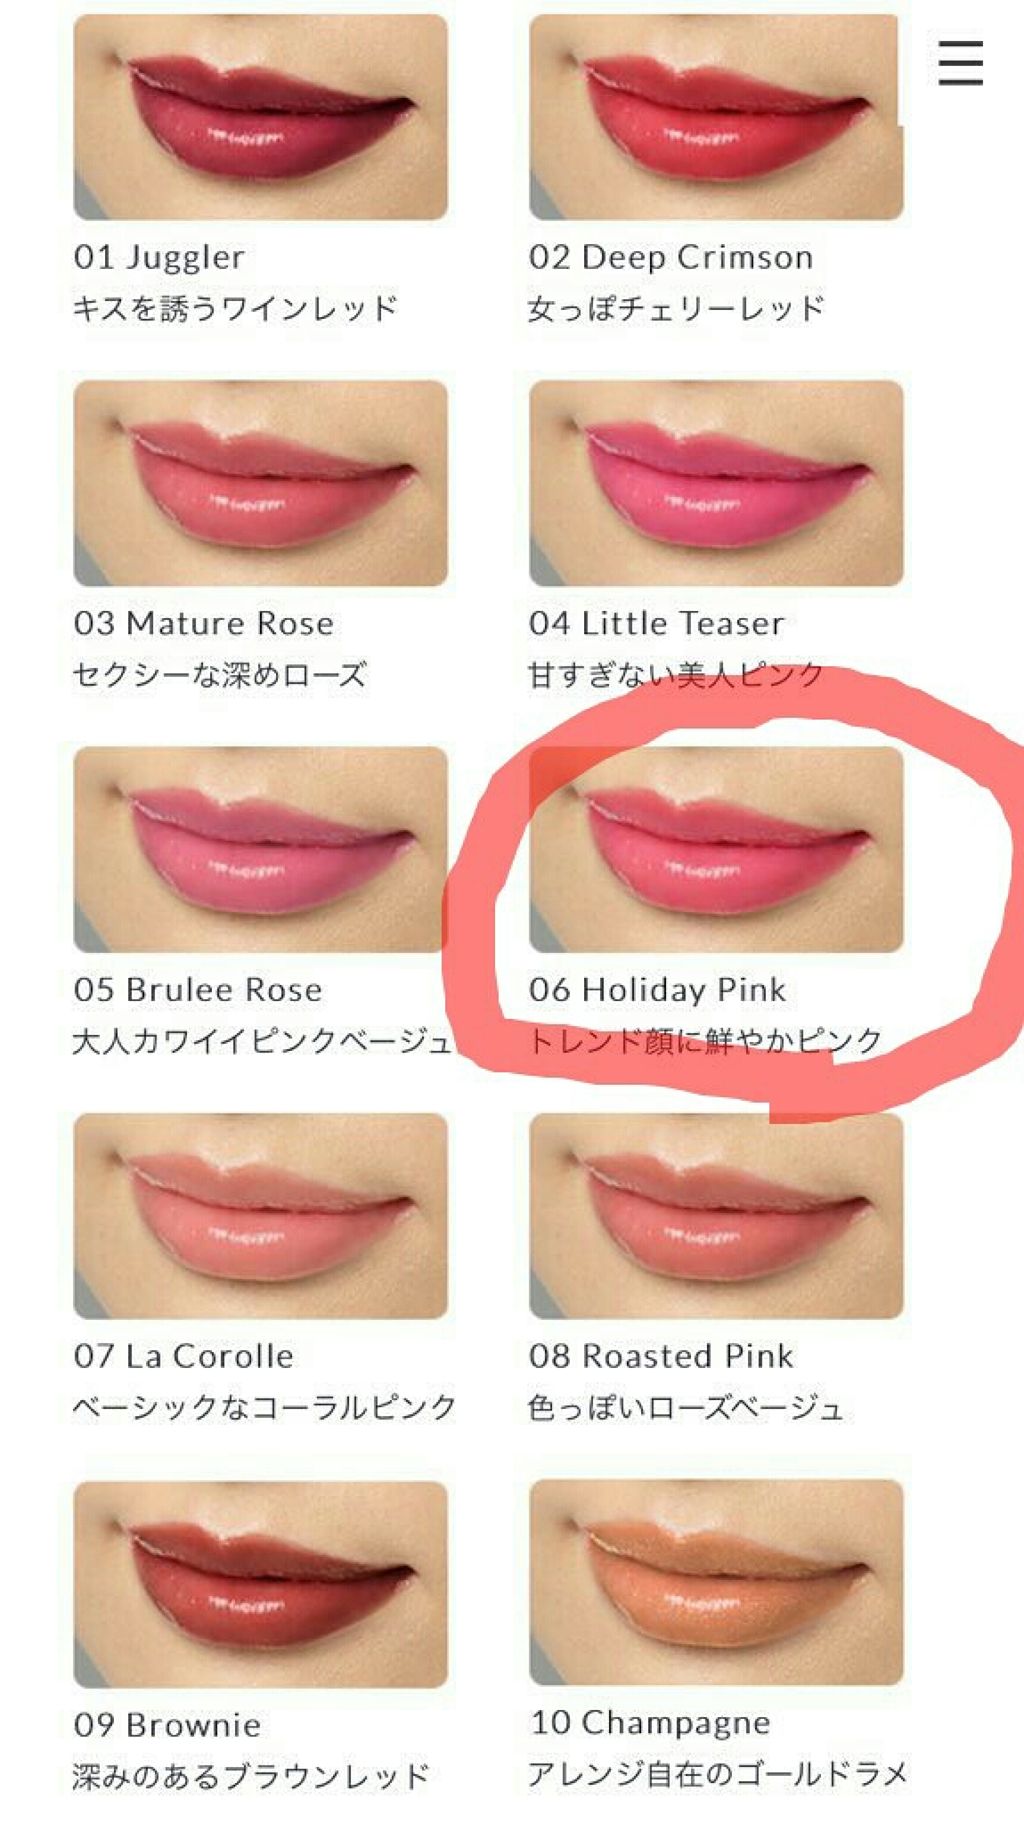 スライドルージュ Kissの口コミ 某サイトのプレゼントキャンペーンに当選しま By もっさん 脂性肌 代後半 Lips